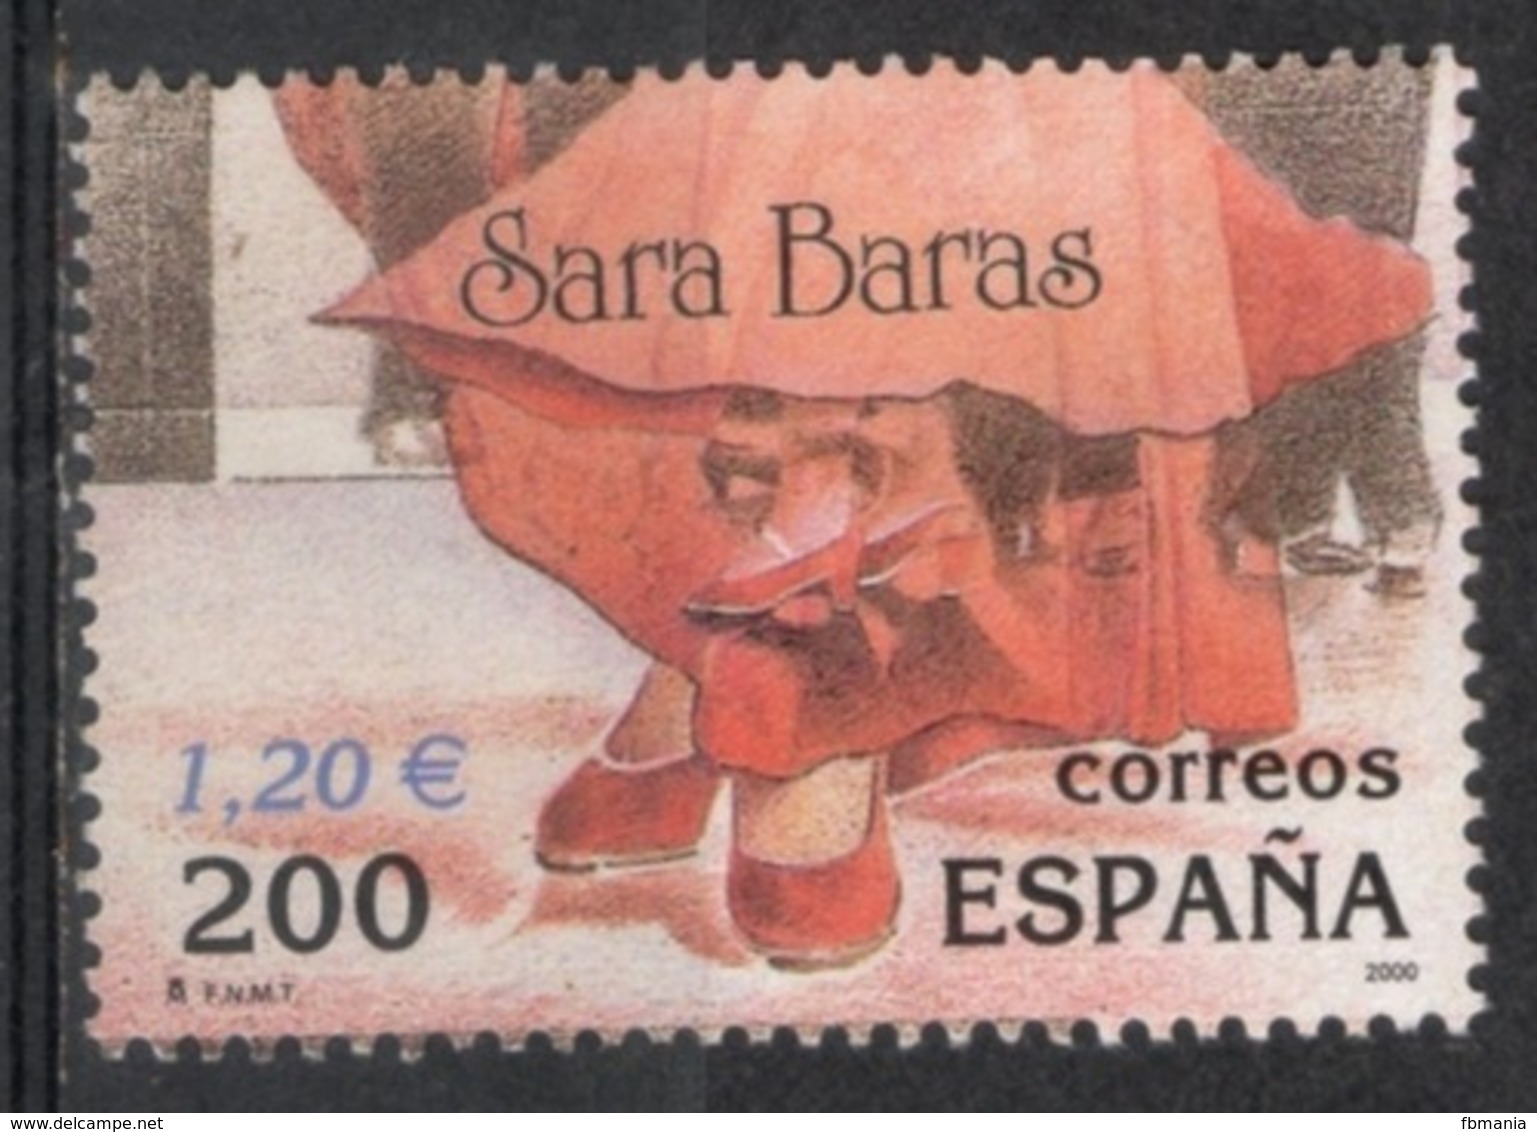 Spagna Spain 2000 - Mostra Filatelica Internazionale International Philatelic Exibition Sara Baras Usato Used - Danza